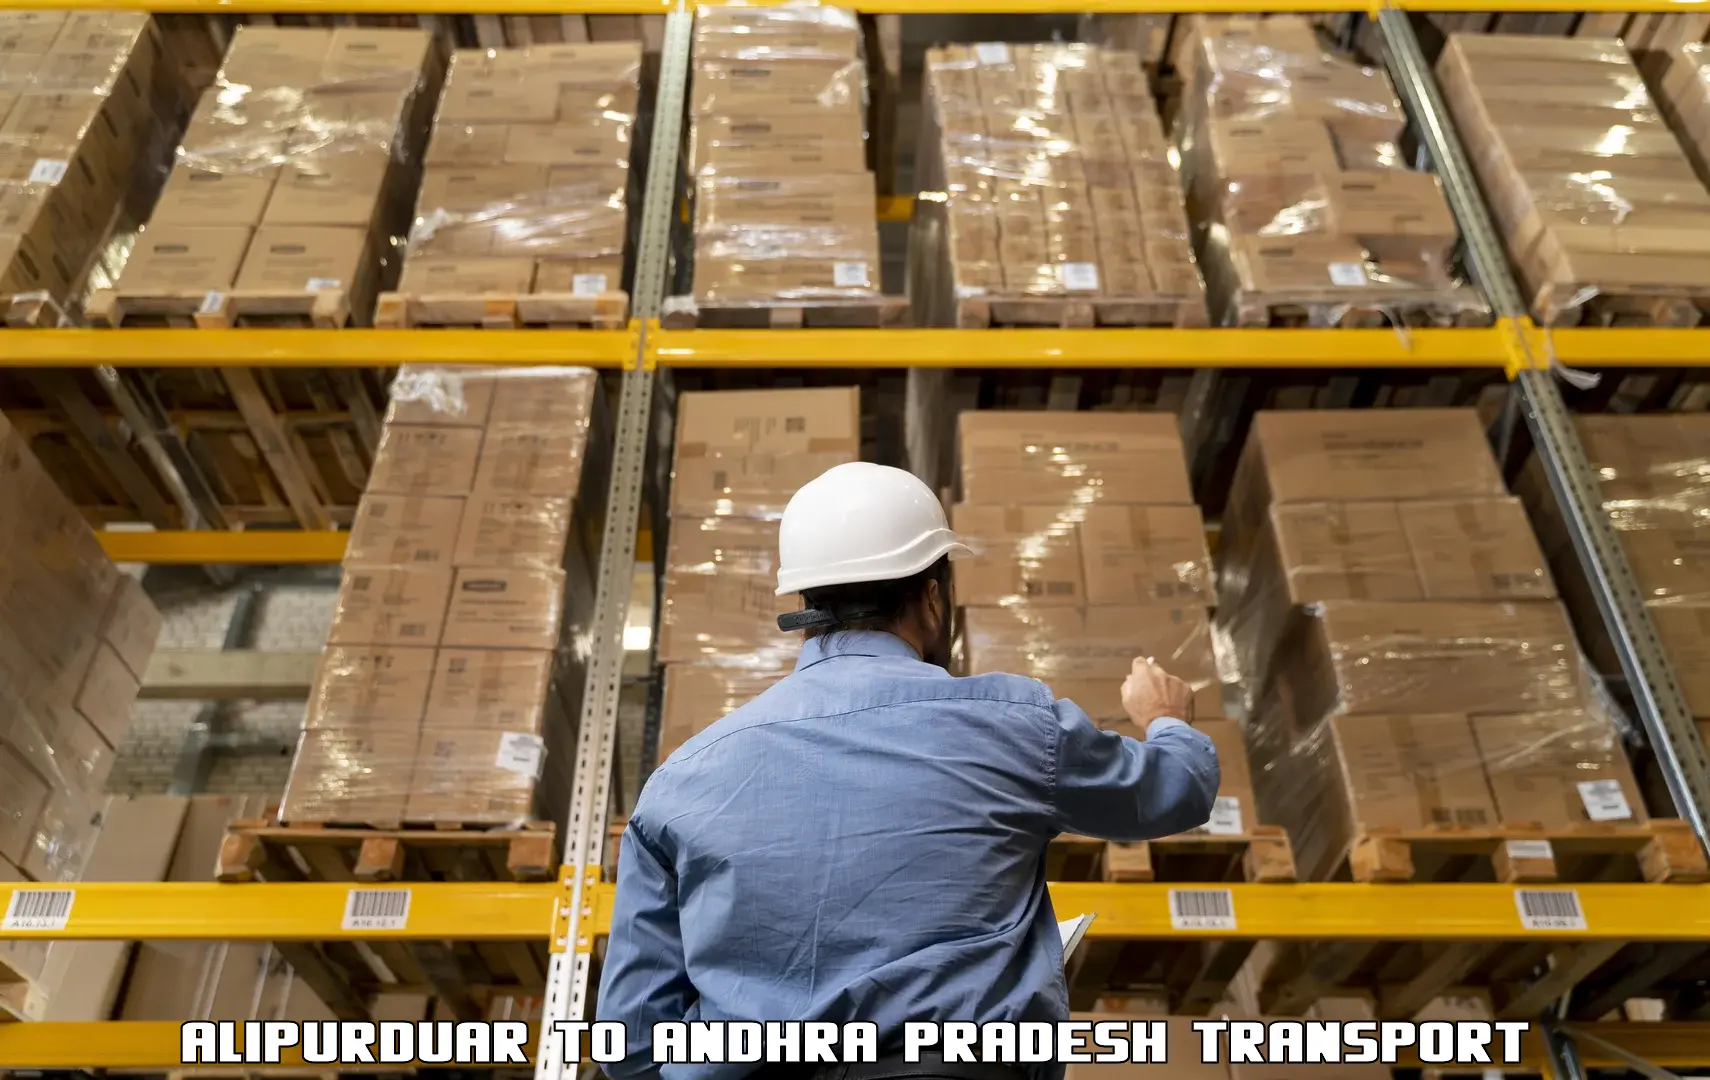 Container transport service Alipurduar to Ponnur